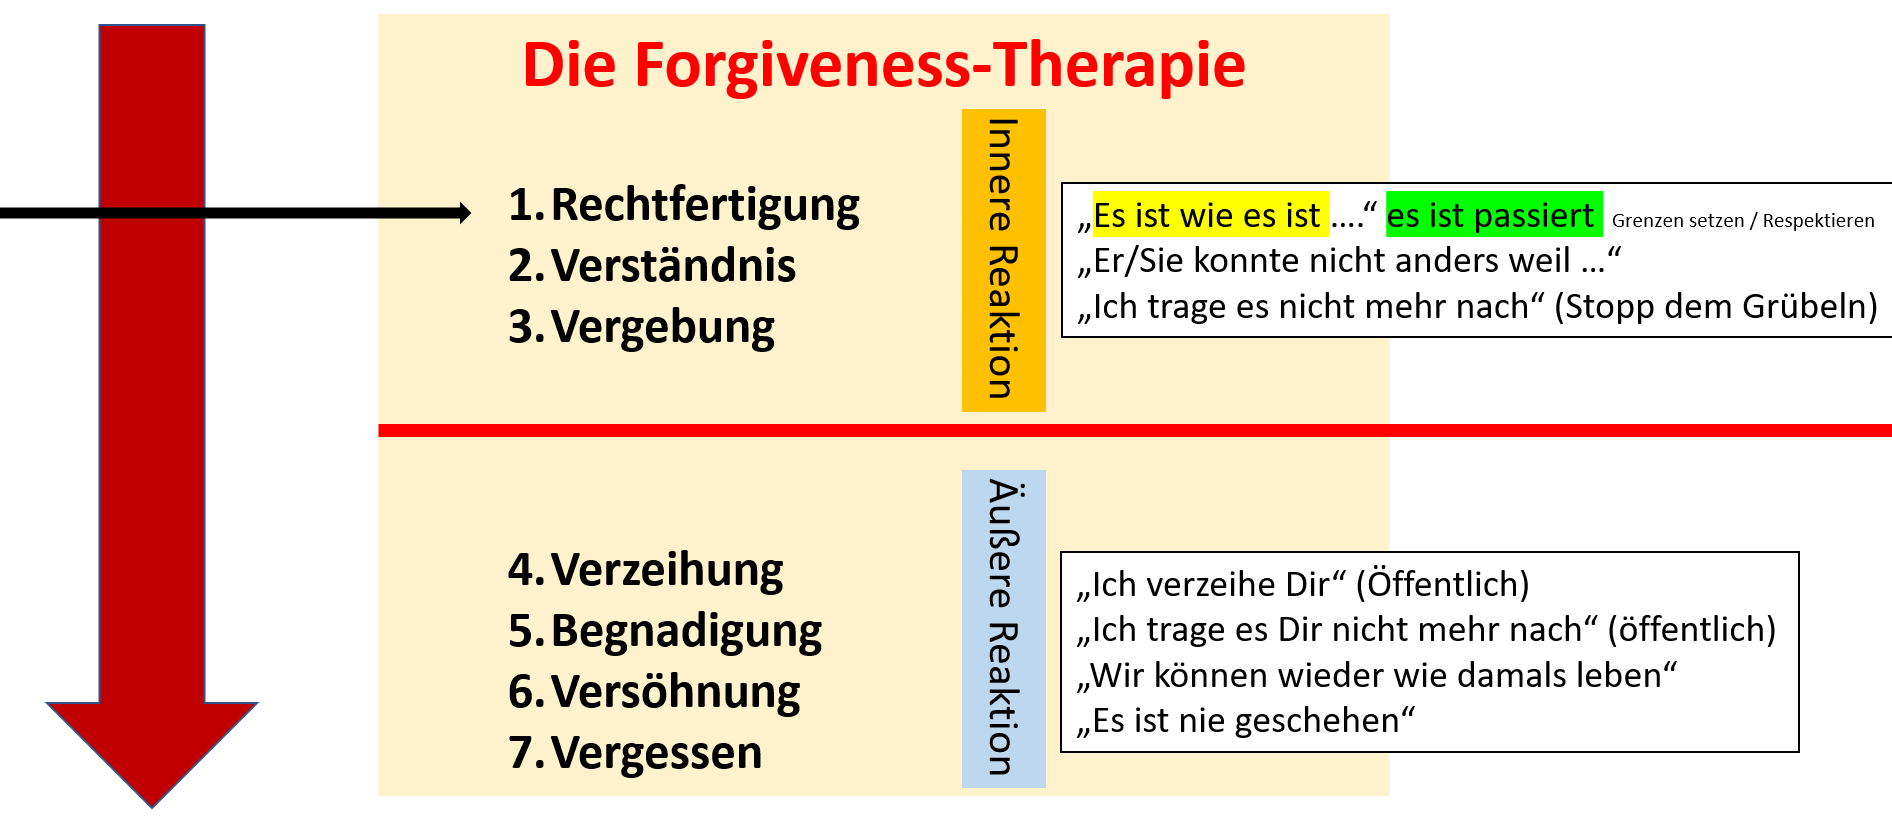 Vergeben ist nicht Vergessen - die Forgiveness Therapie